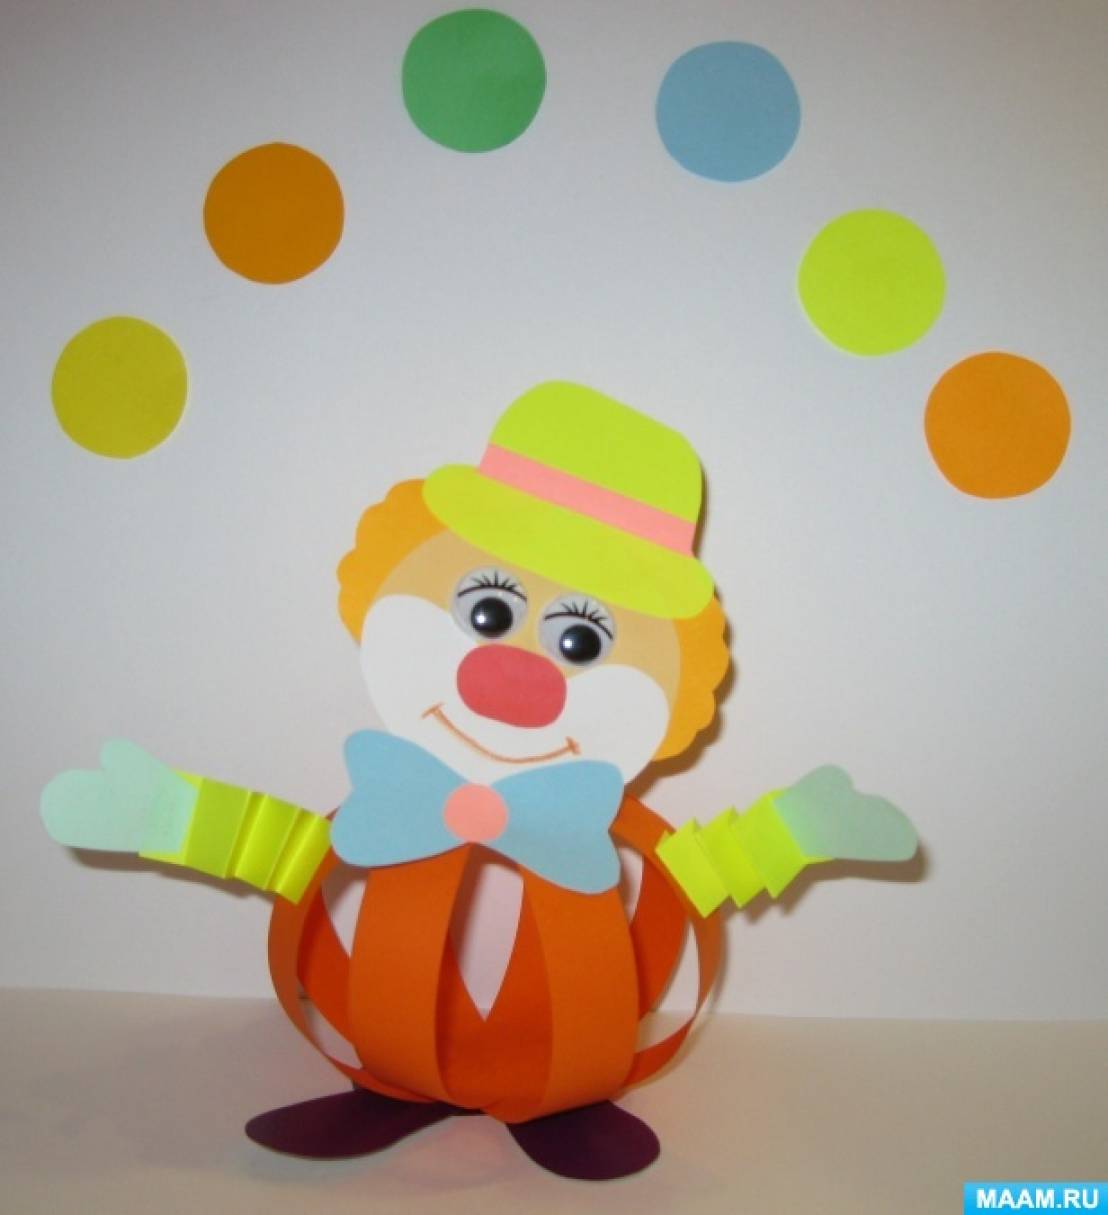 Мастер-класс по изготовлению объемной поделки из цветной бумаги «Веселый Клоун»